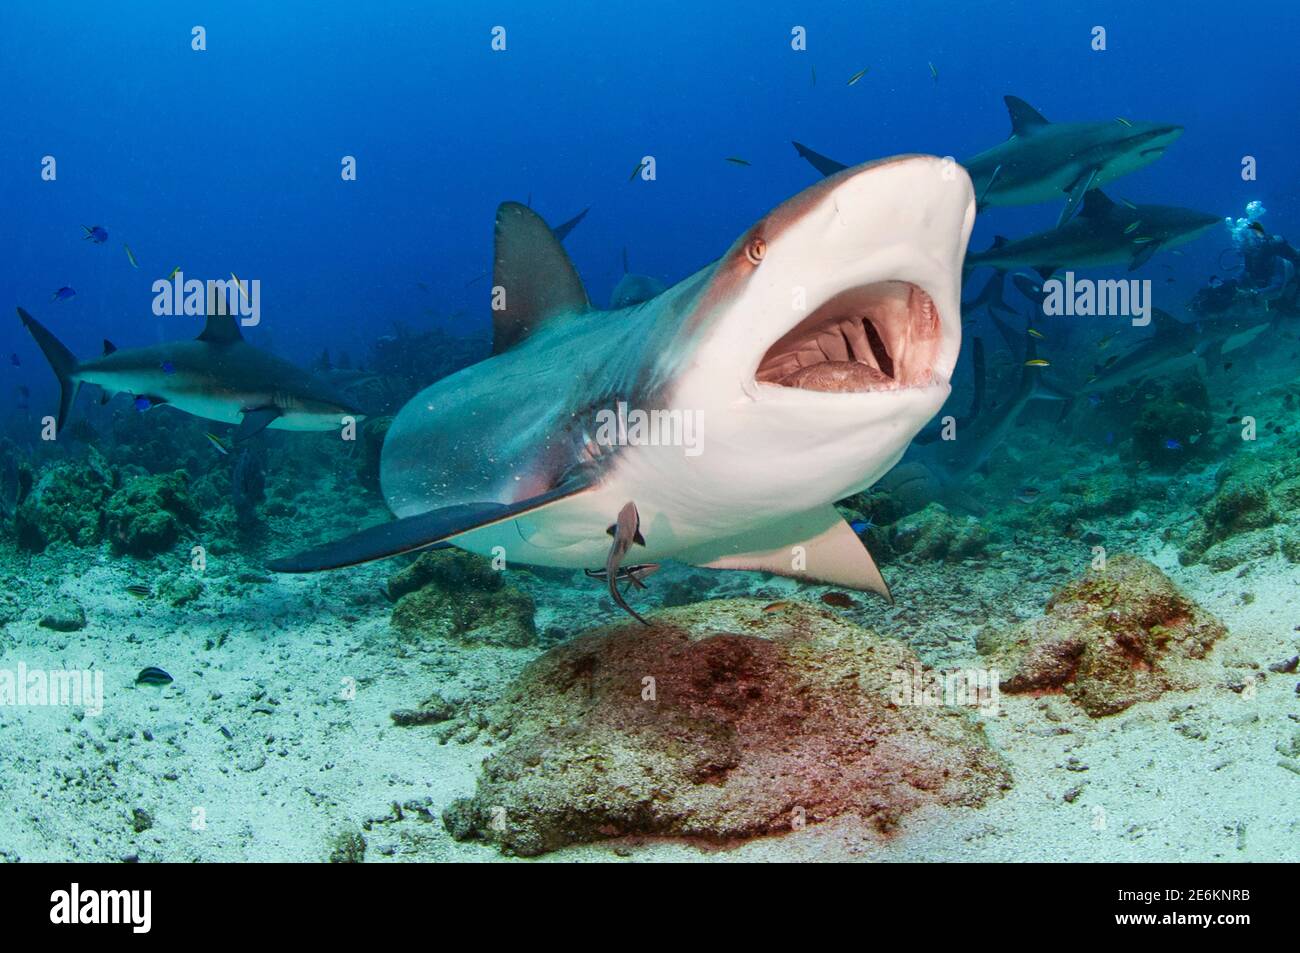 Karibischer Riffhai (Carcharhinus perezi) beim Essen mit offenem Mund und Zähnen. Cordelia Bank, Roatan, Islas de la Bahia, Honduras Stockfoto